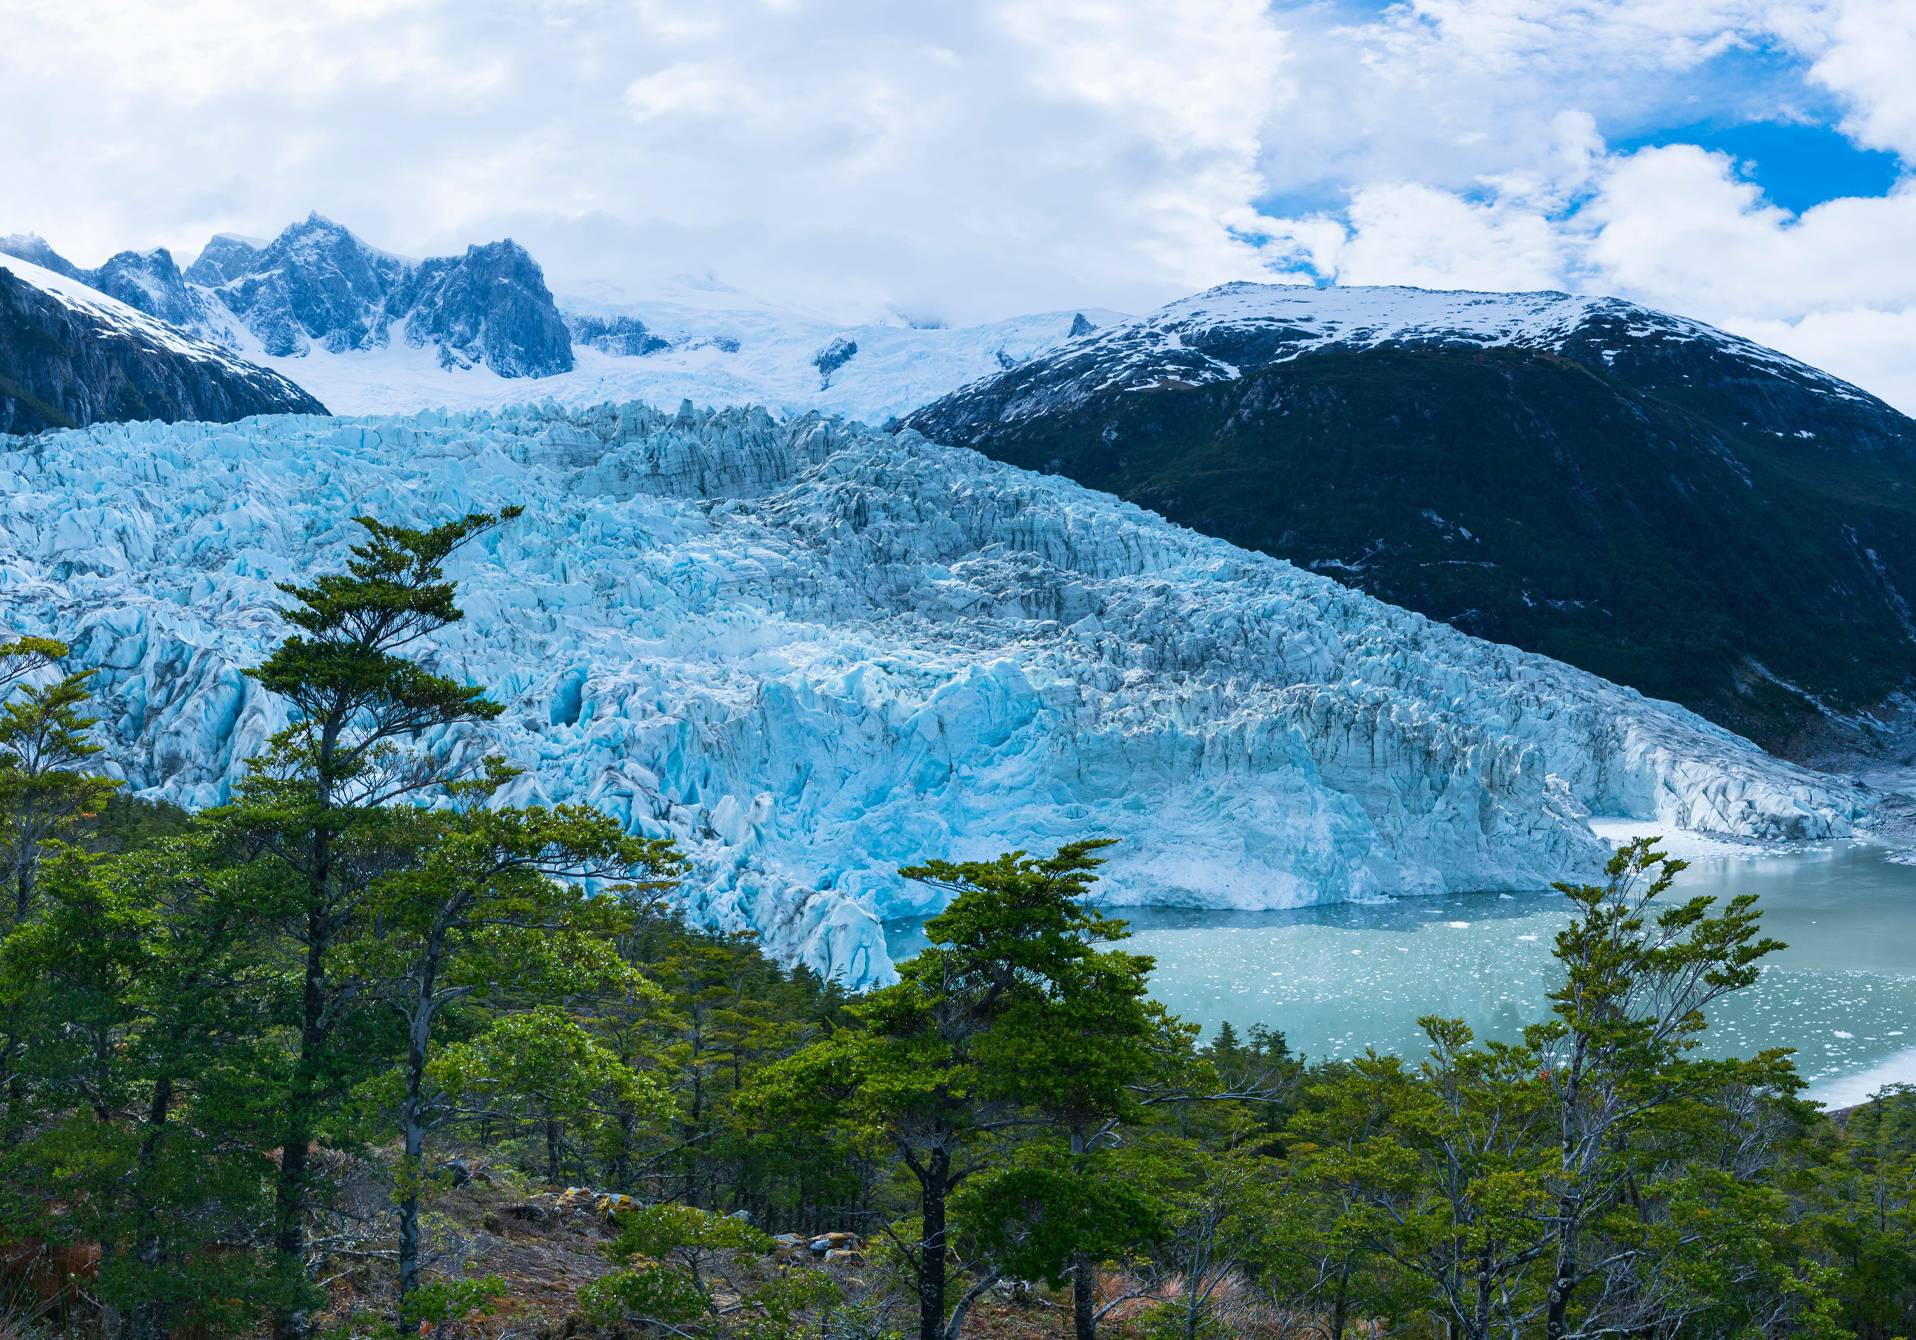 photographie du glacier de Pia et de la forêt qui a émergé, au sud du Chili